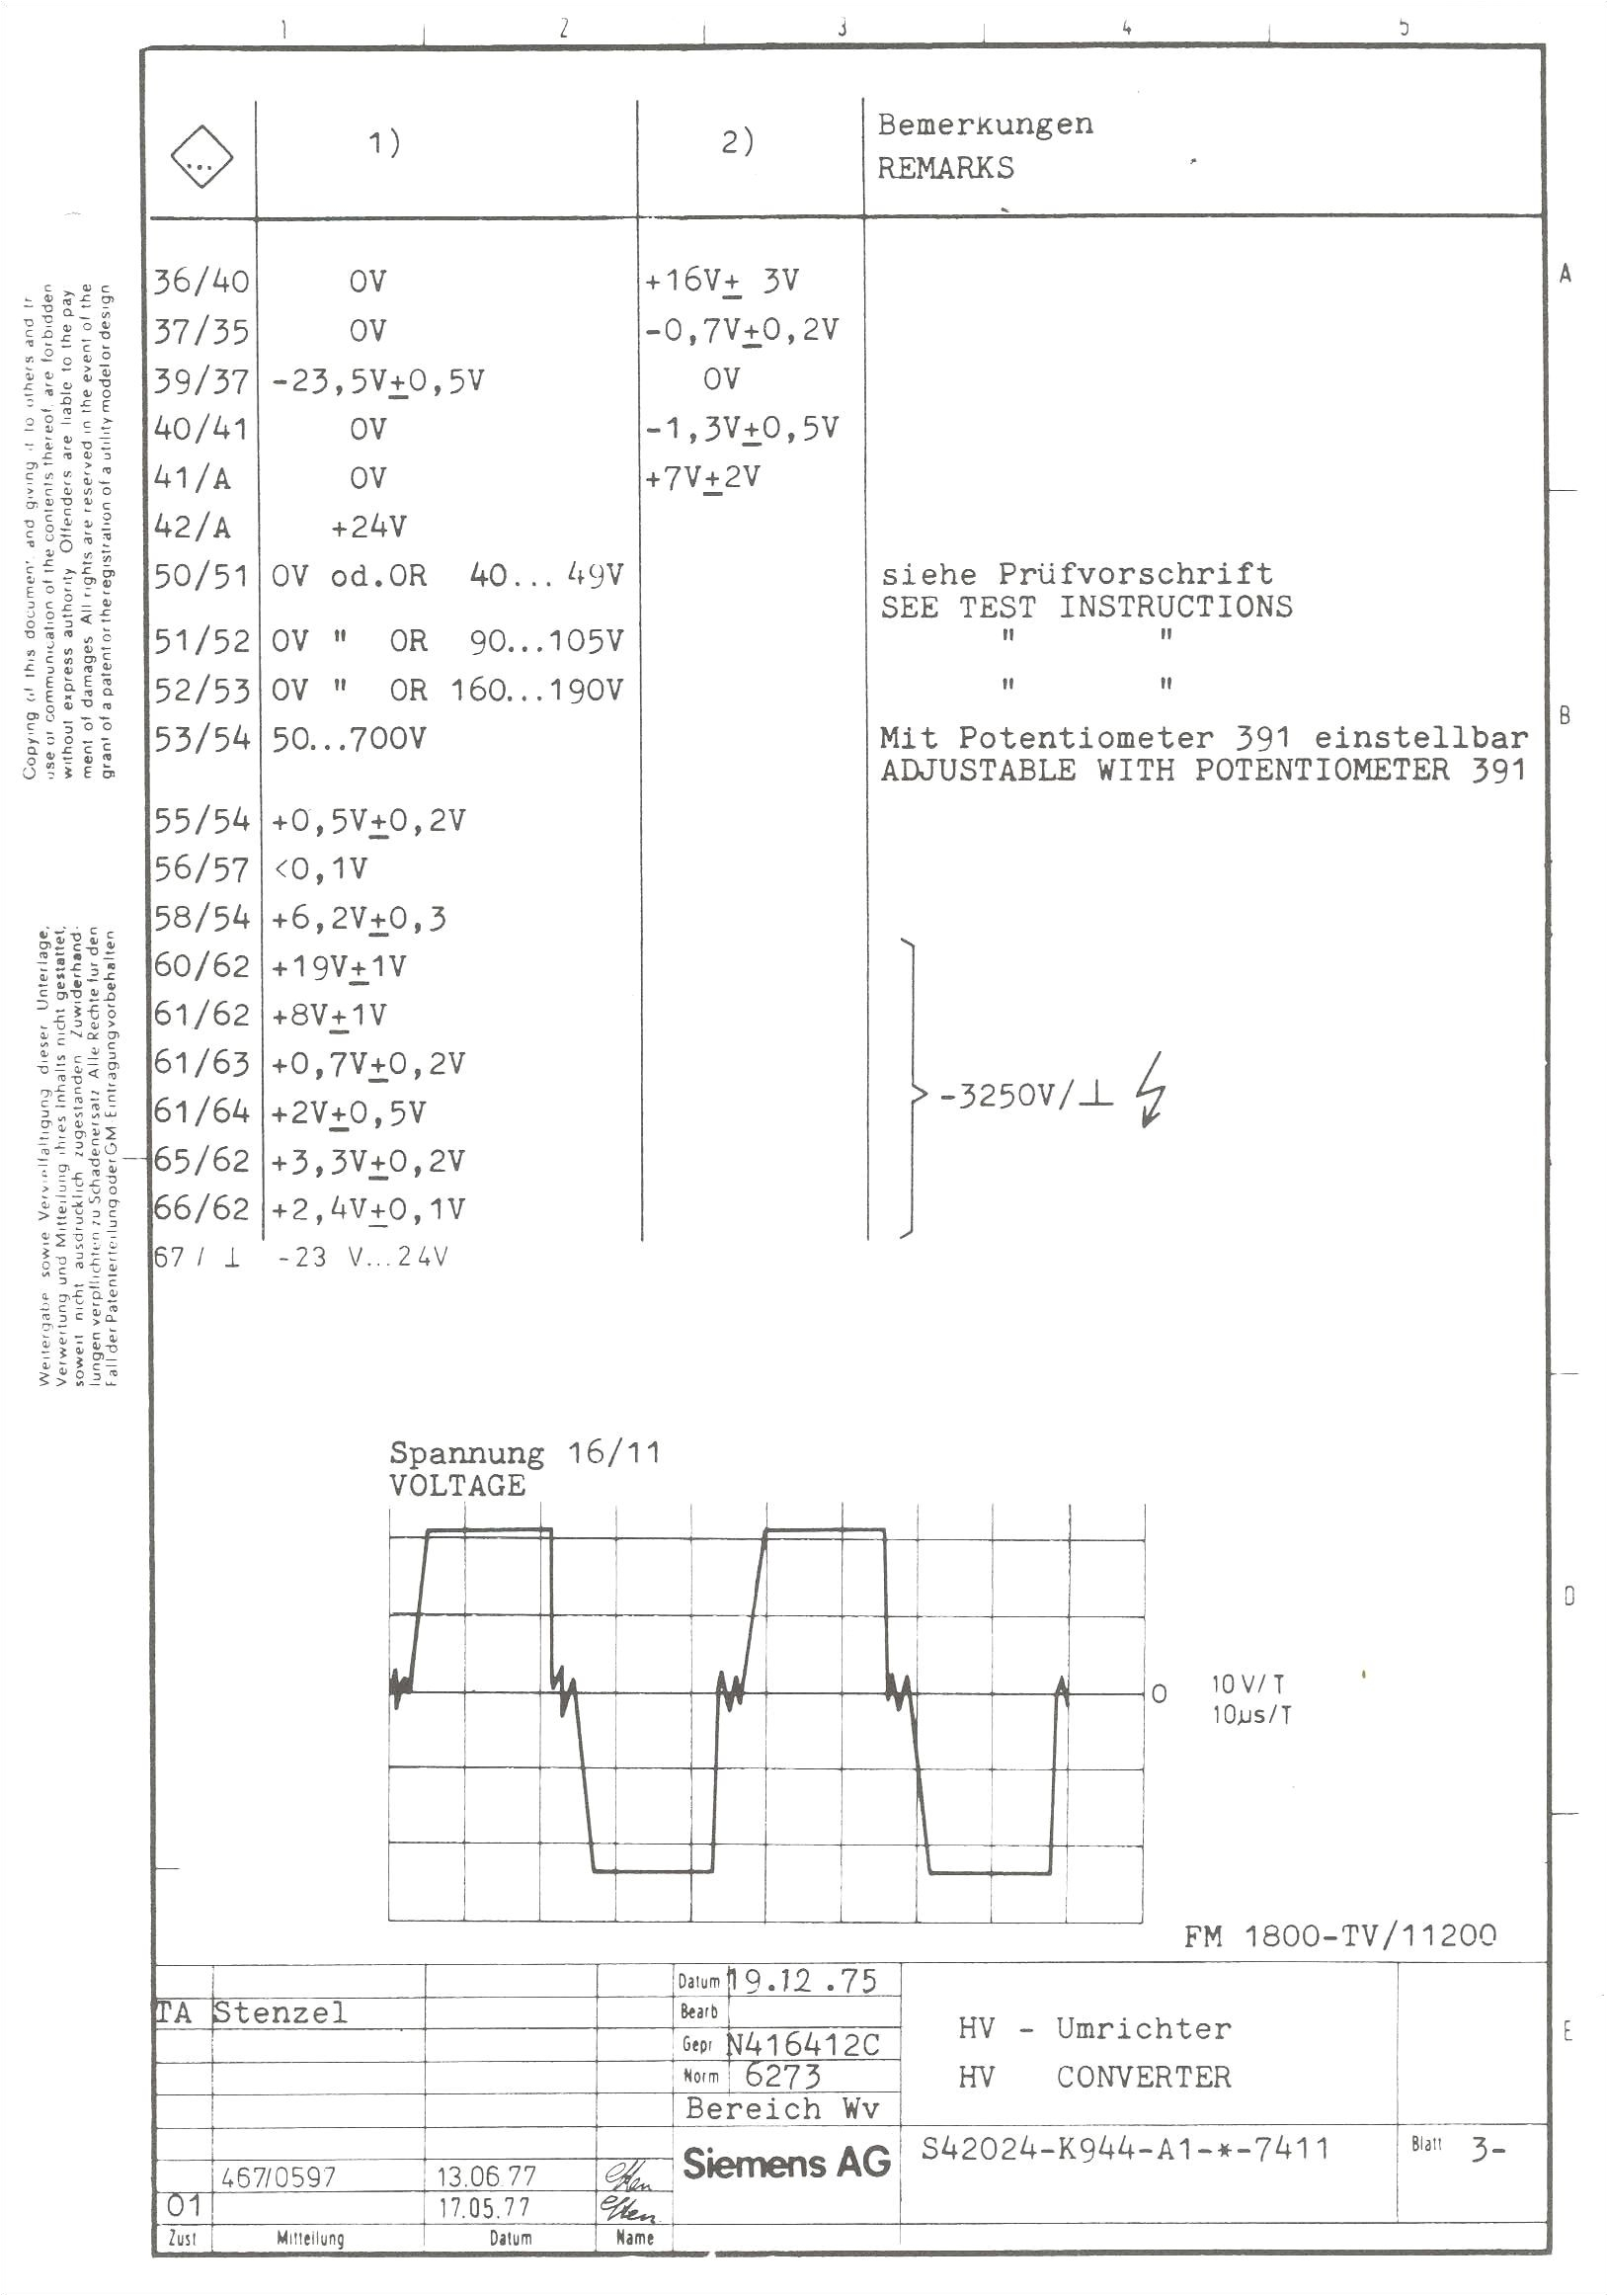 proline car stereo wiring diagram diagram diagramtemplate diagramsample